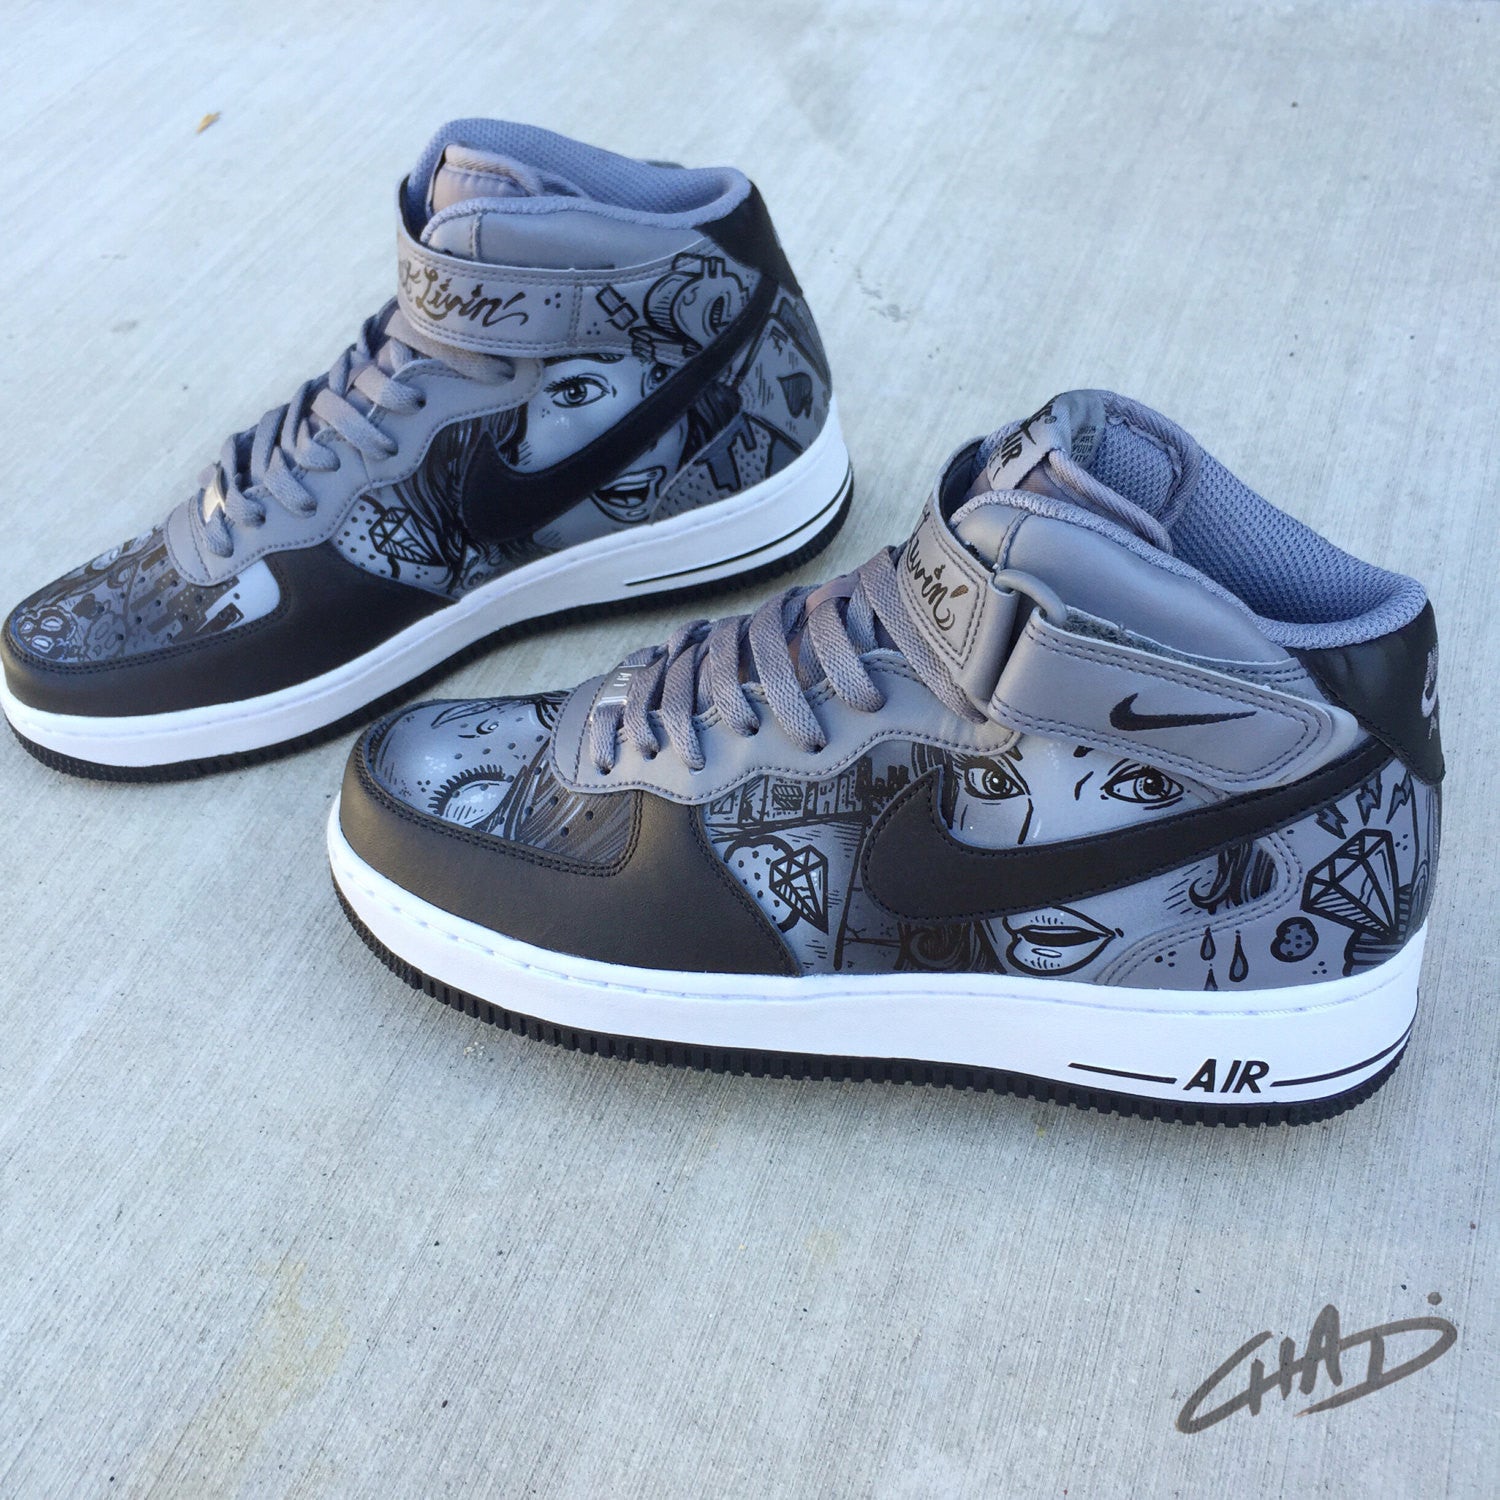 Nike Air Force 1 Custom Painted Sneakers